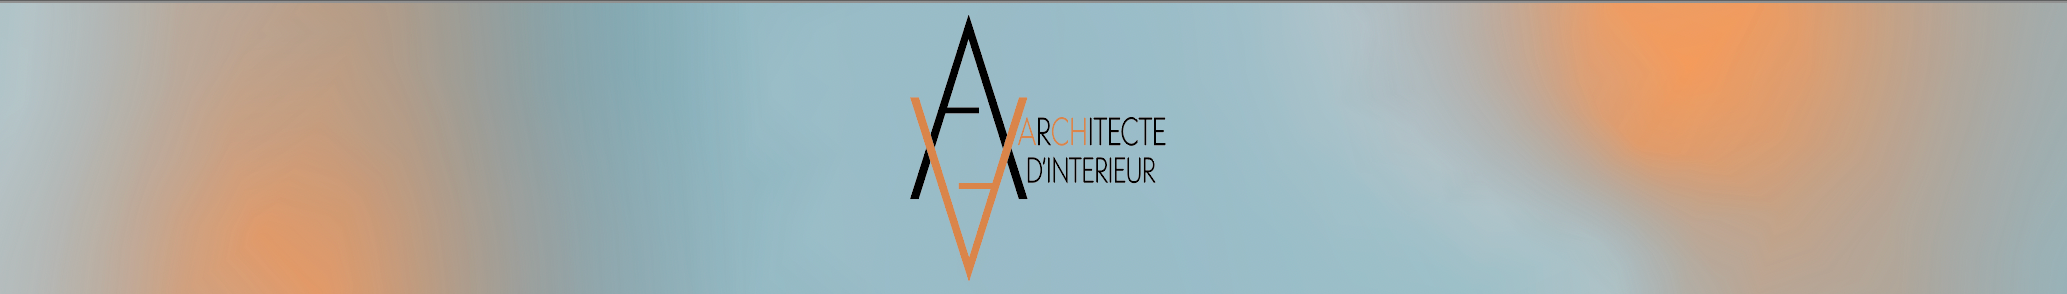 AACH PARIS's profile banner